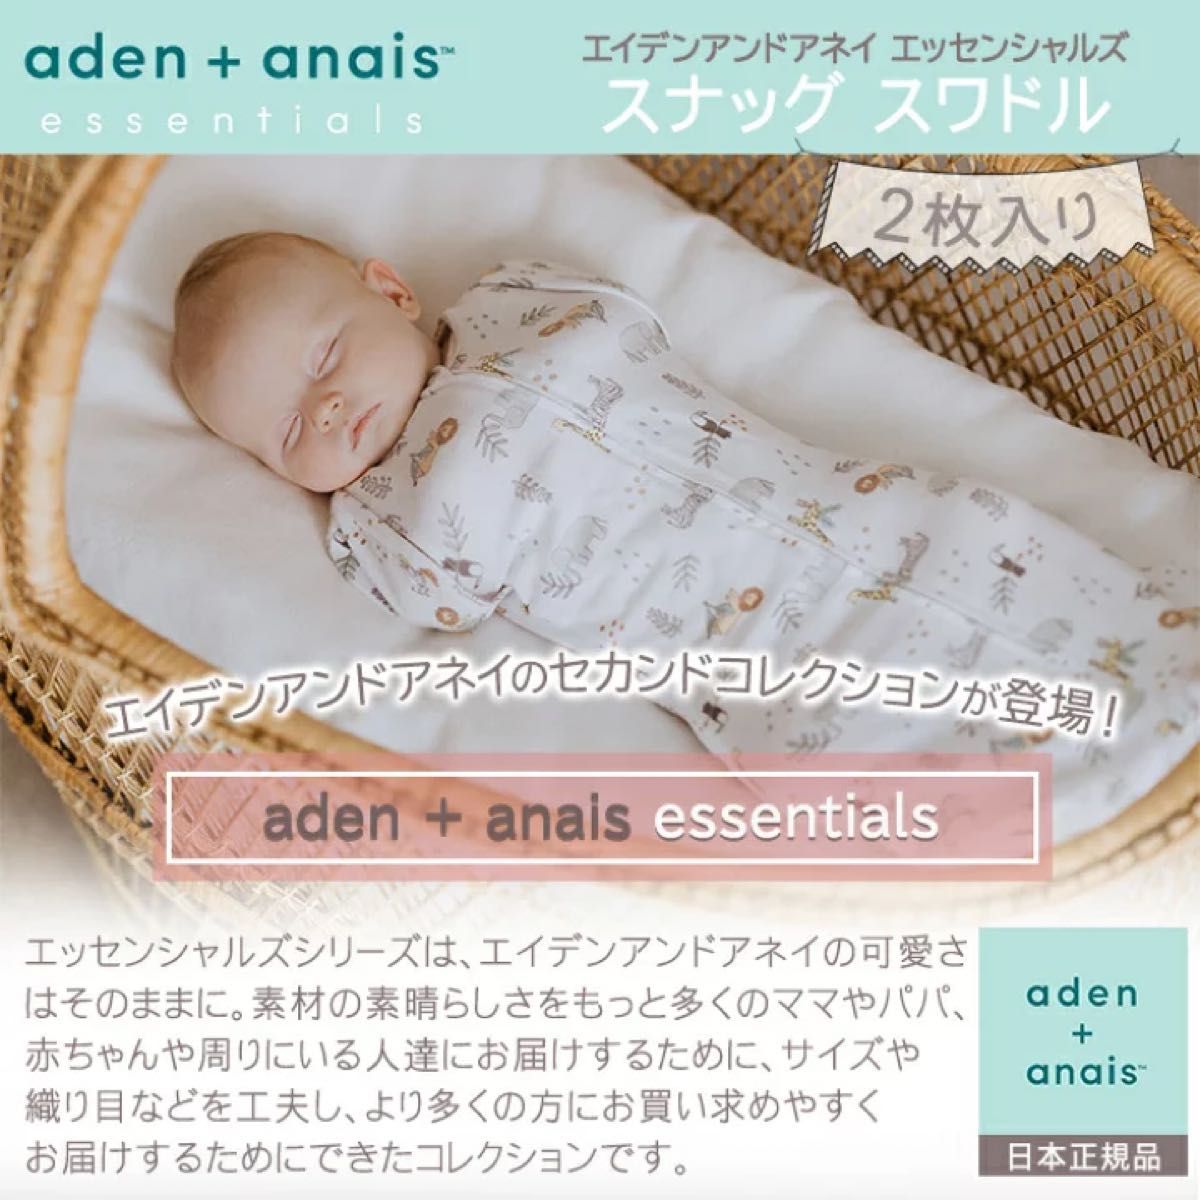 日本正規品 aden+anais essentials スナッグスワドル